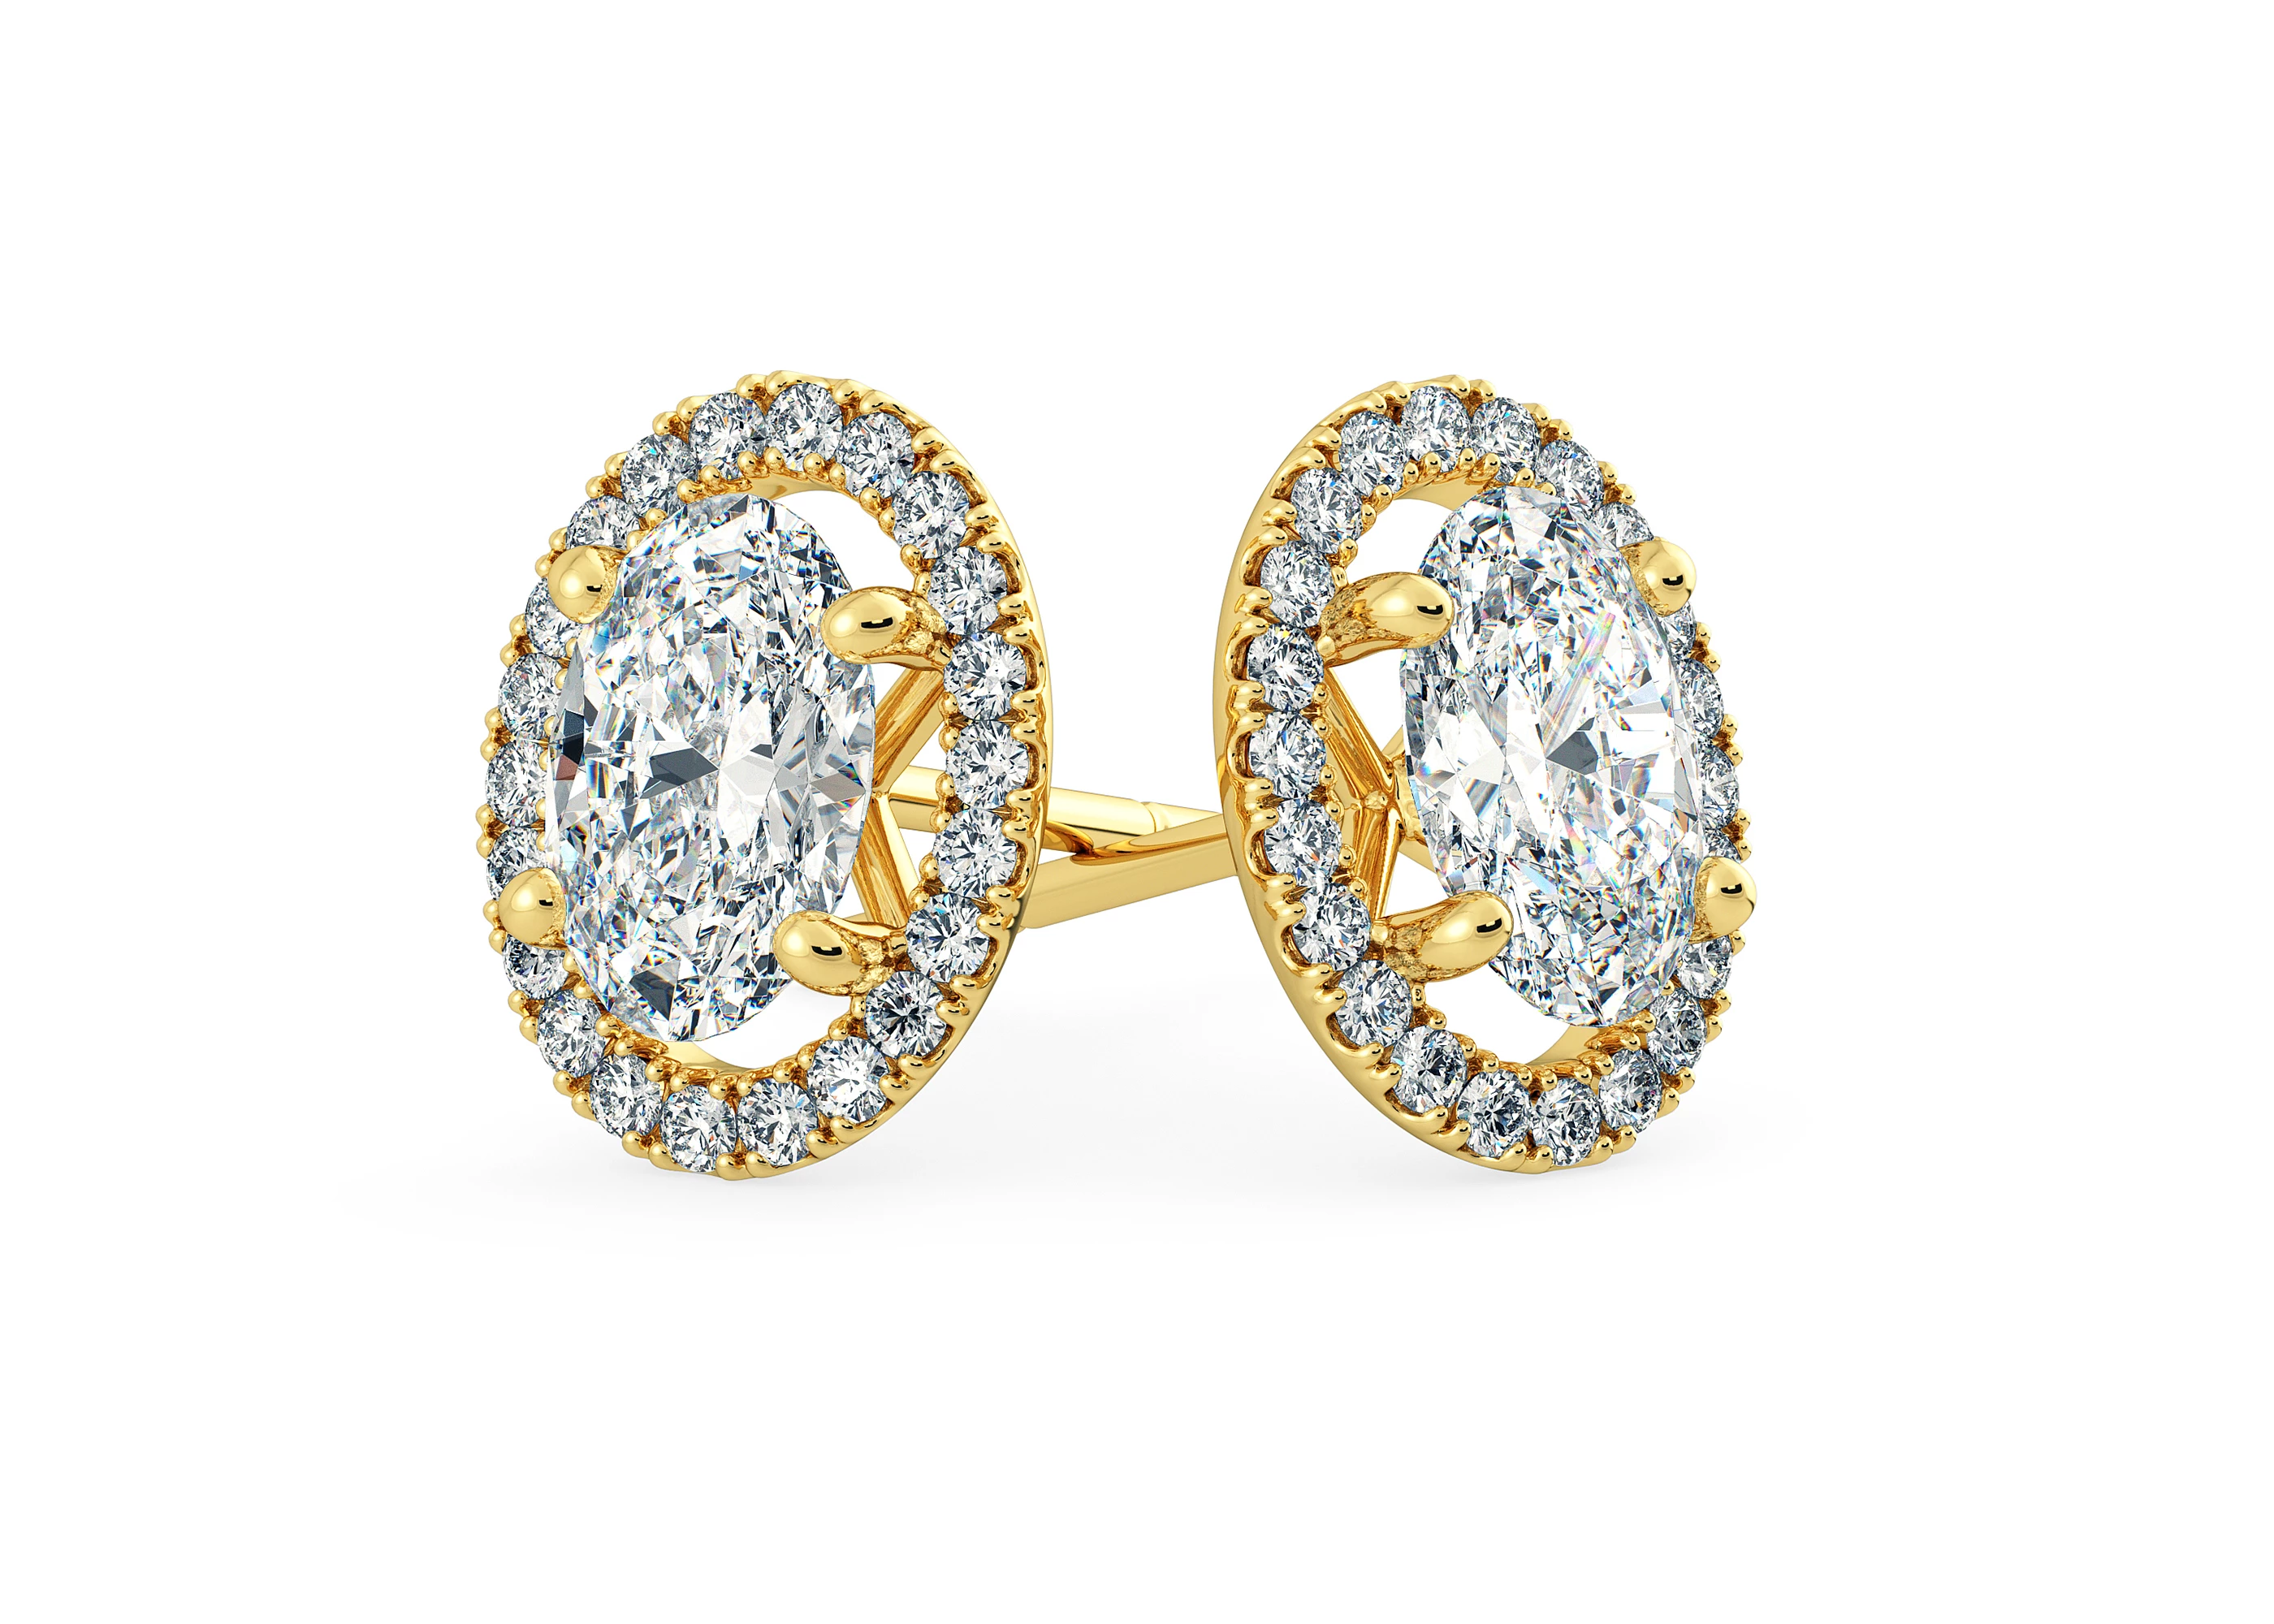 Bijou Oval Diamond Stud Earrings in 18K Yellow Gold with Butterfly Backs